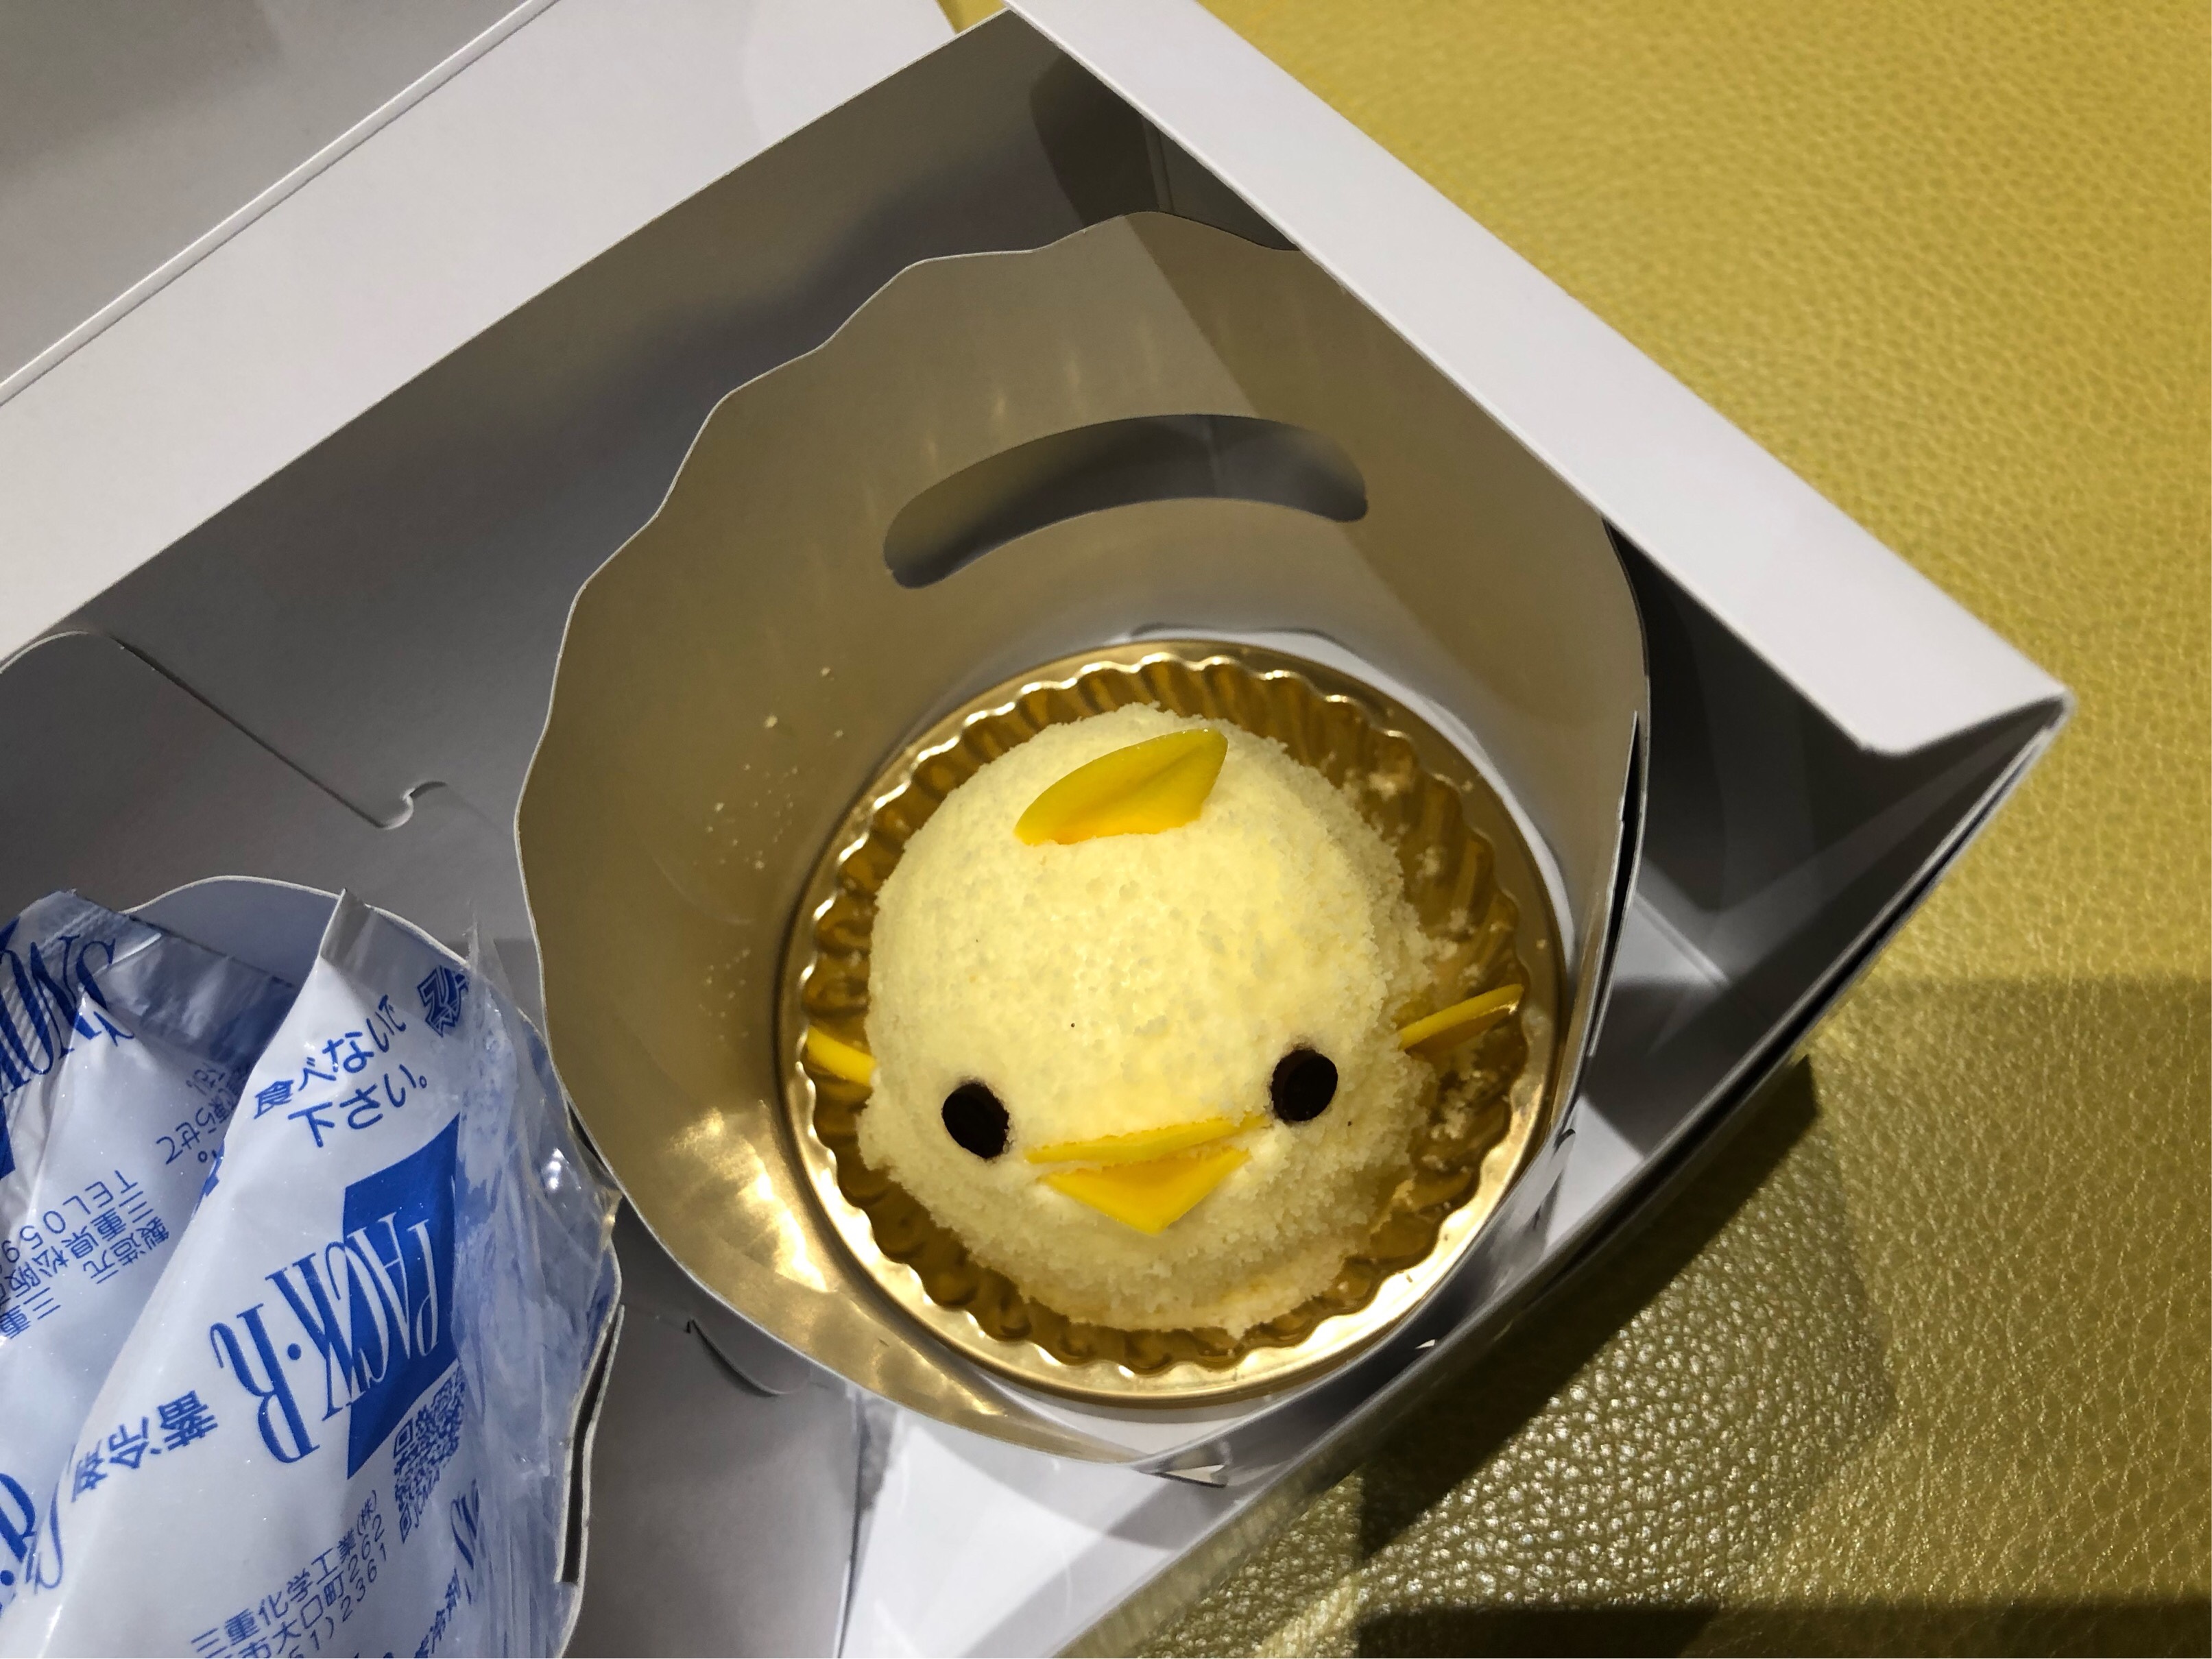 嵐が食べたケーキが食べたい それなら 名古屋駅で購入可能 ぴよりんがオススメ 土木女子の考察ブログ